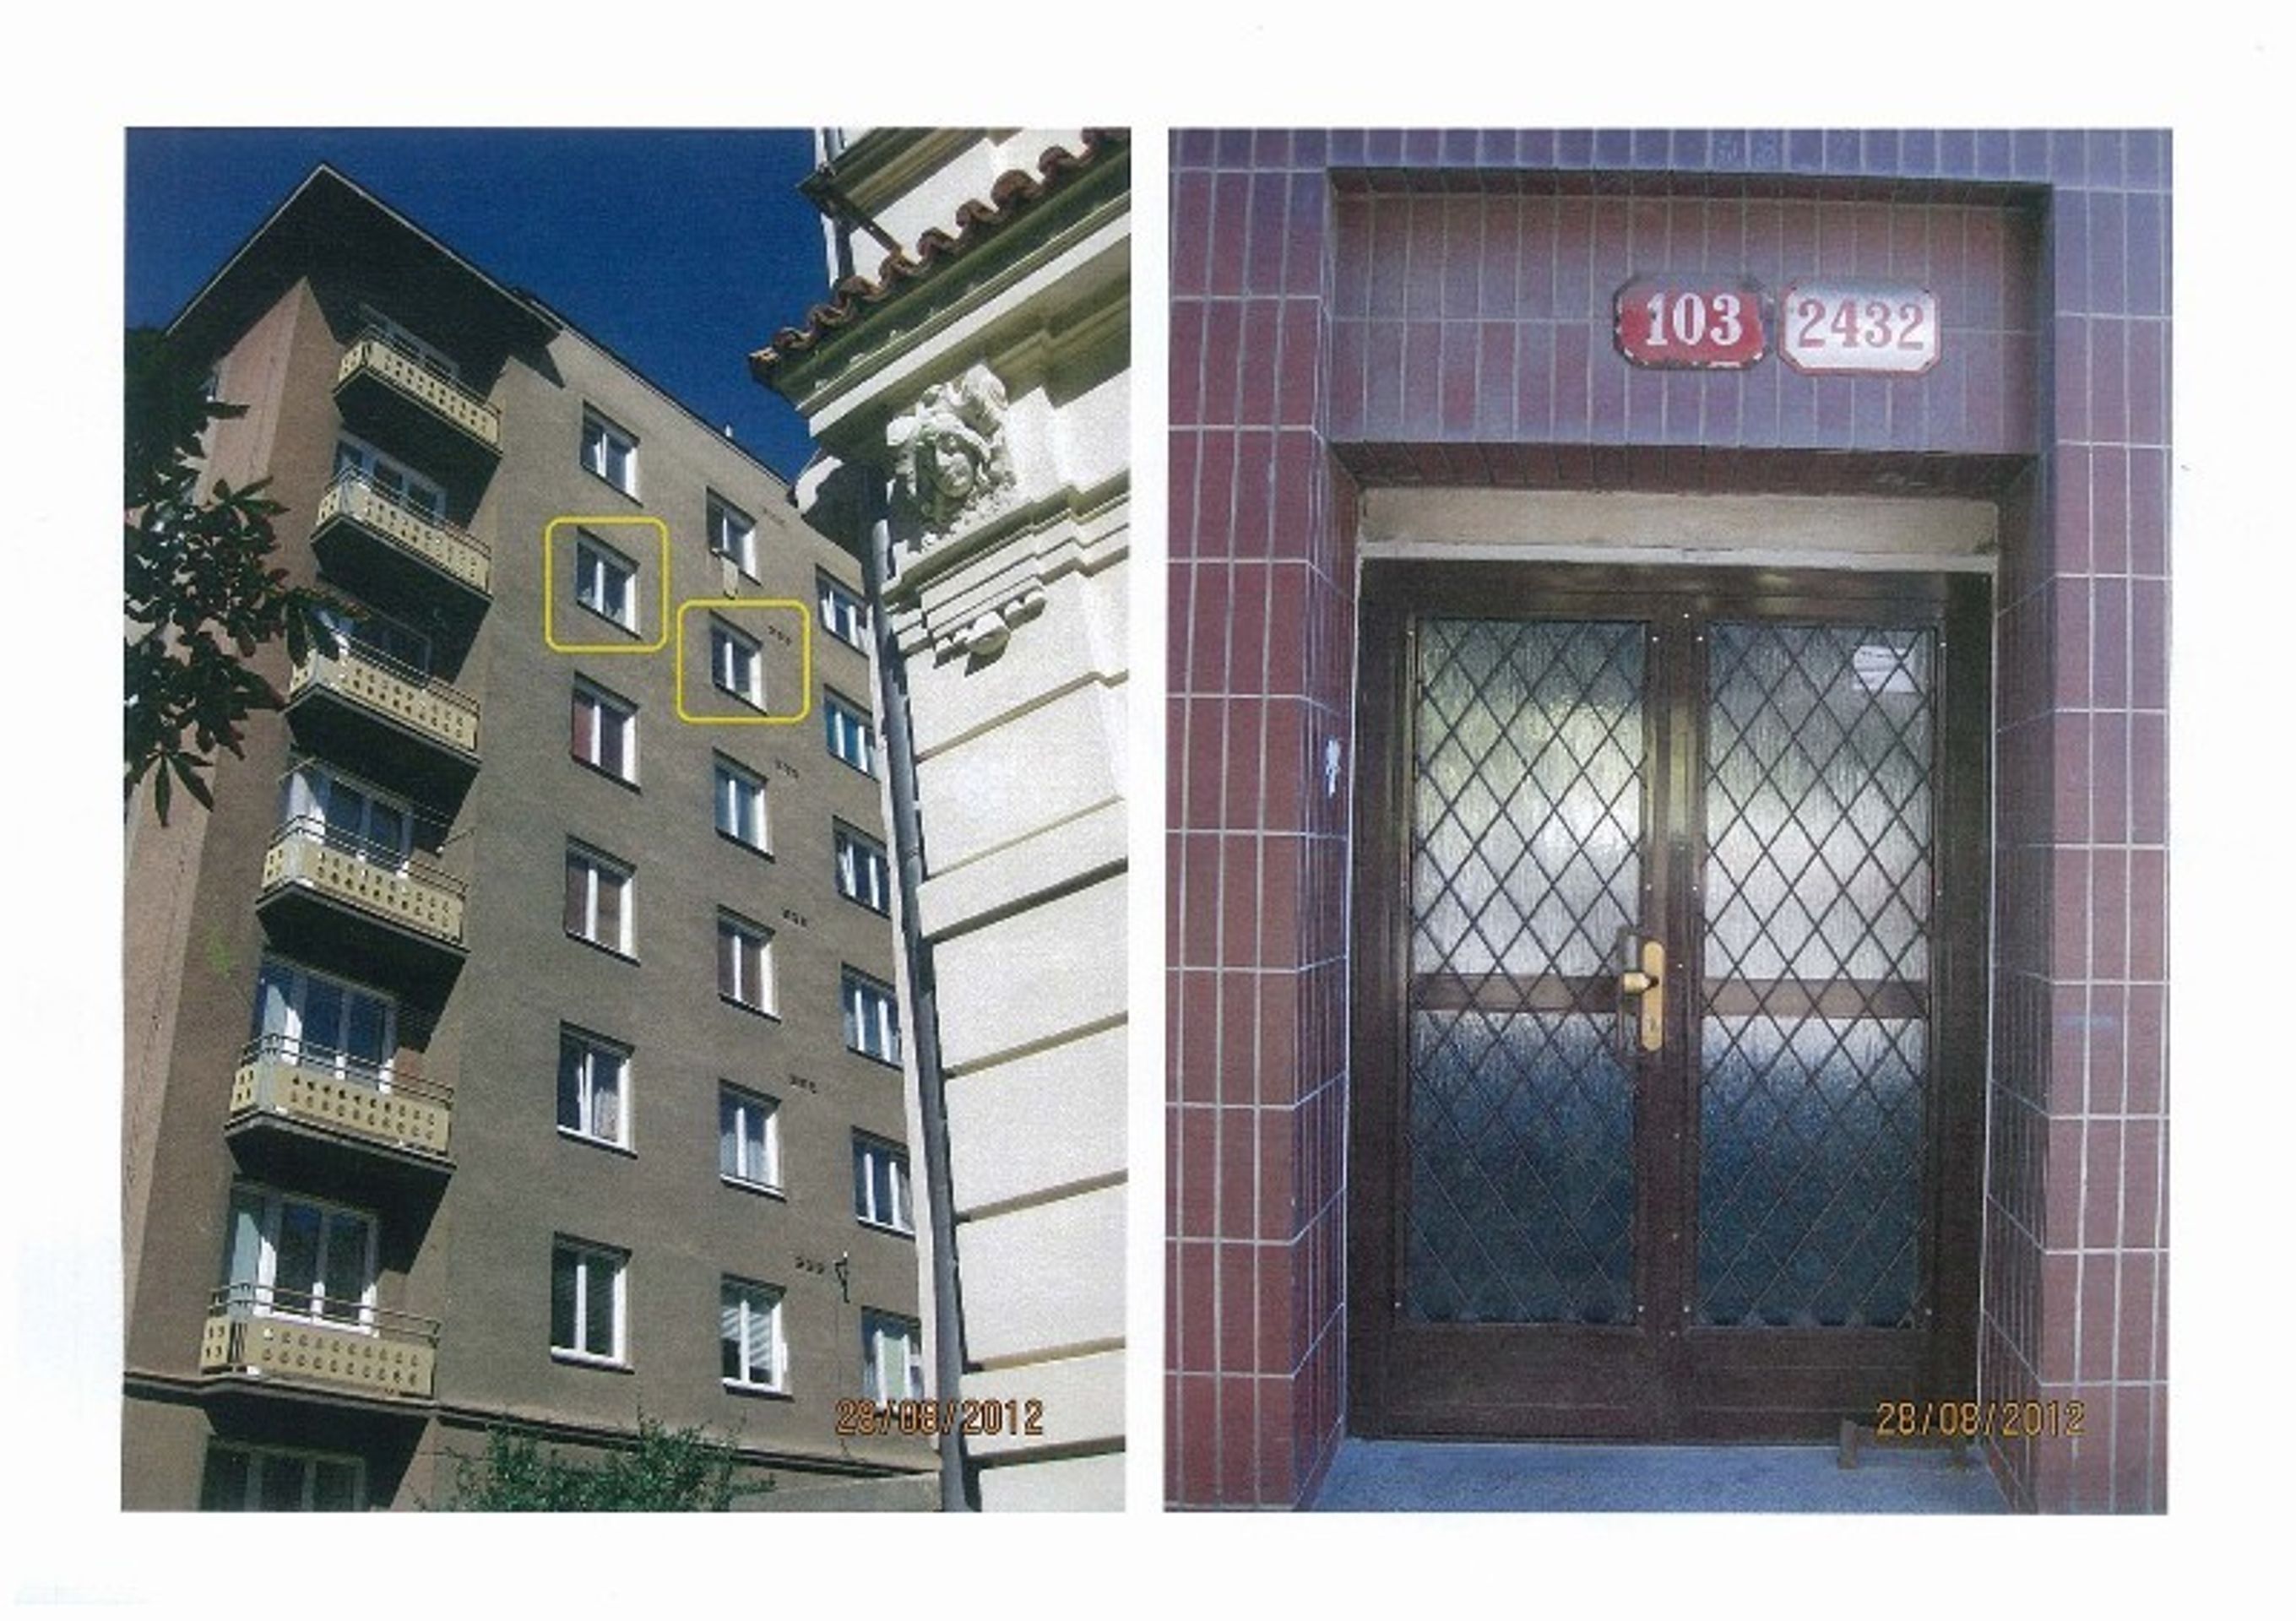 Prodej majetku: 02 byt Plzeň - Jižní předměstí - 3 - GALERIE: Prodej bytu v Plzni - Jižní předměstí 02 (3/4)